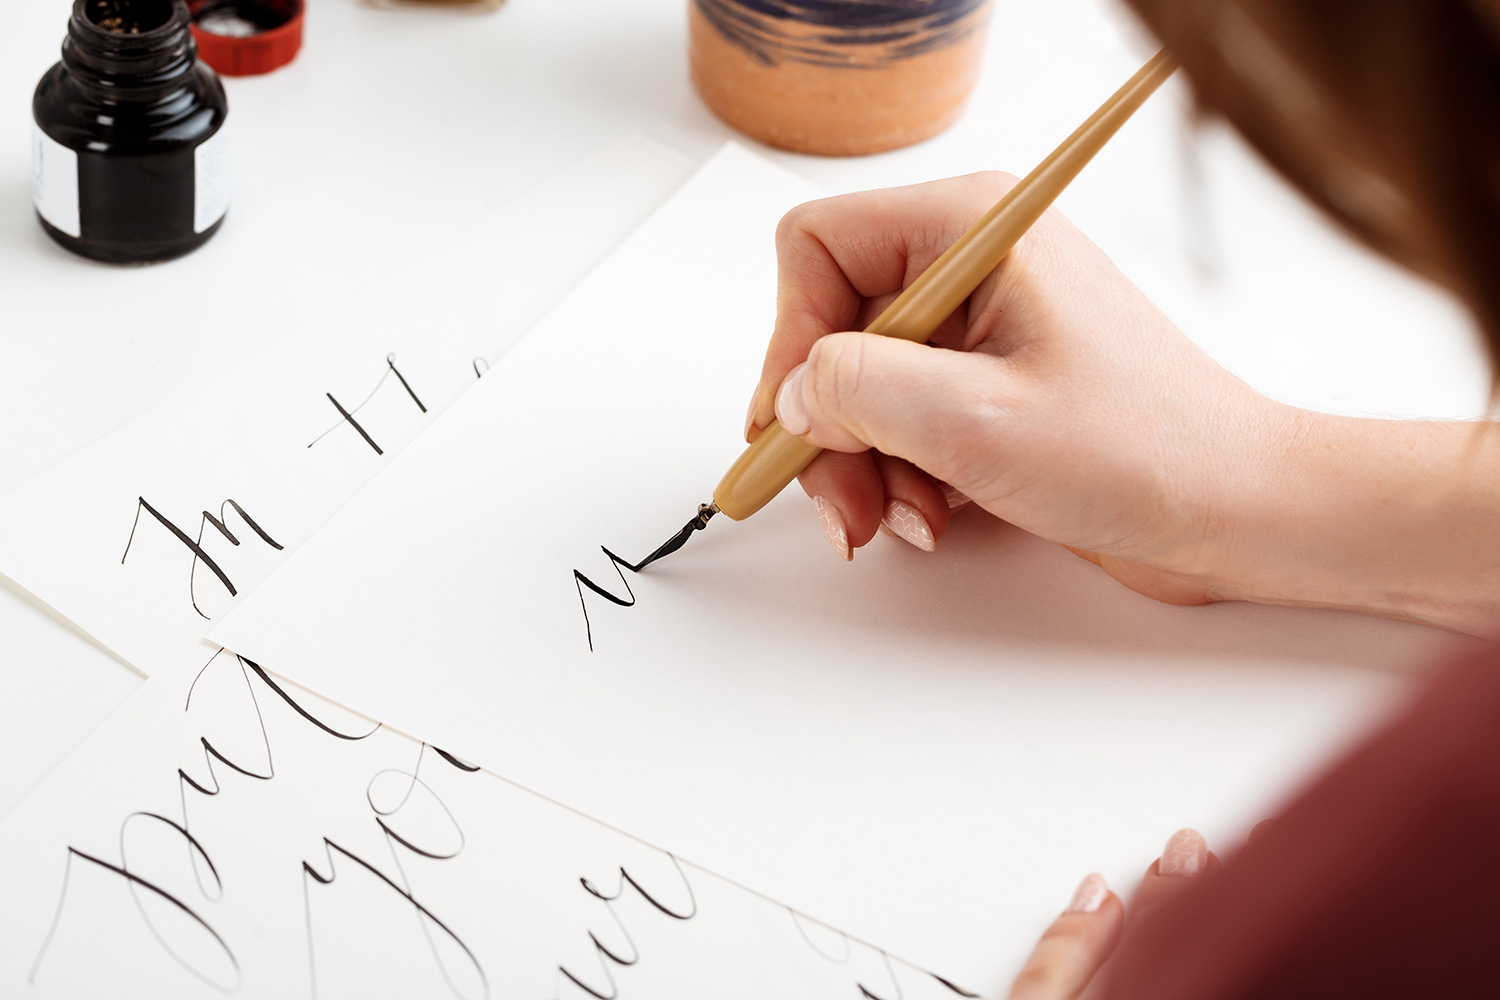 Atelier tipografico | Partecipazioni nozze calligrafate a mano